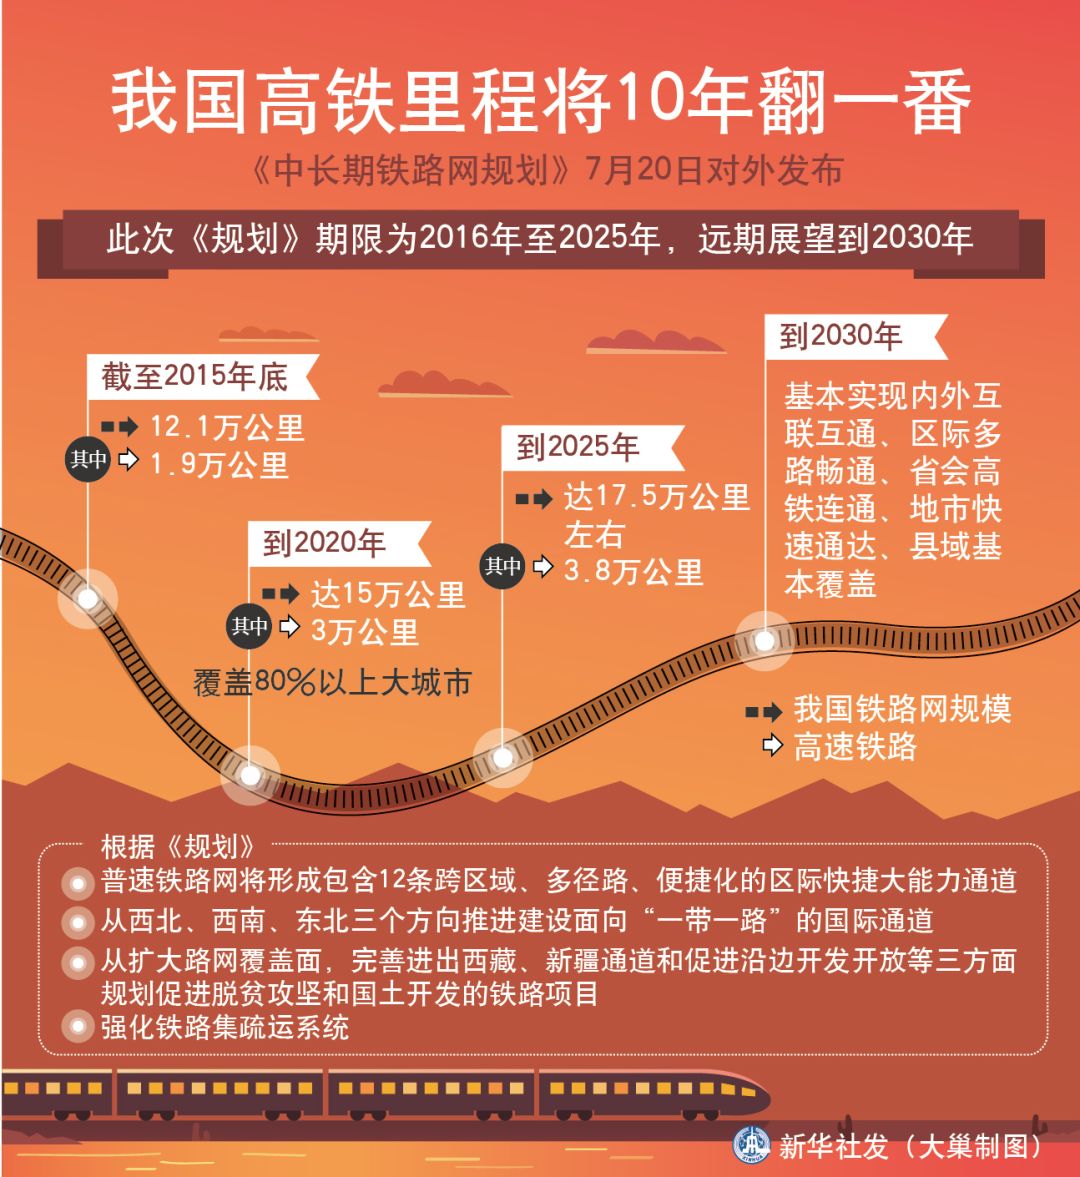 据国际铁路联盟(uic)的统计数据,中国高铁的安全性在世界上最高到2